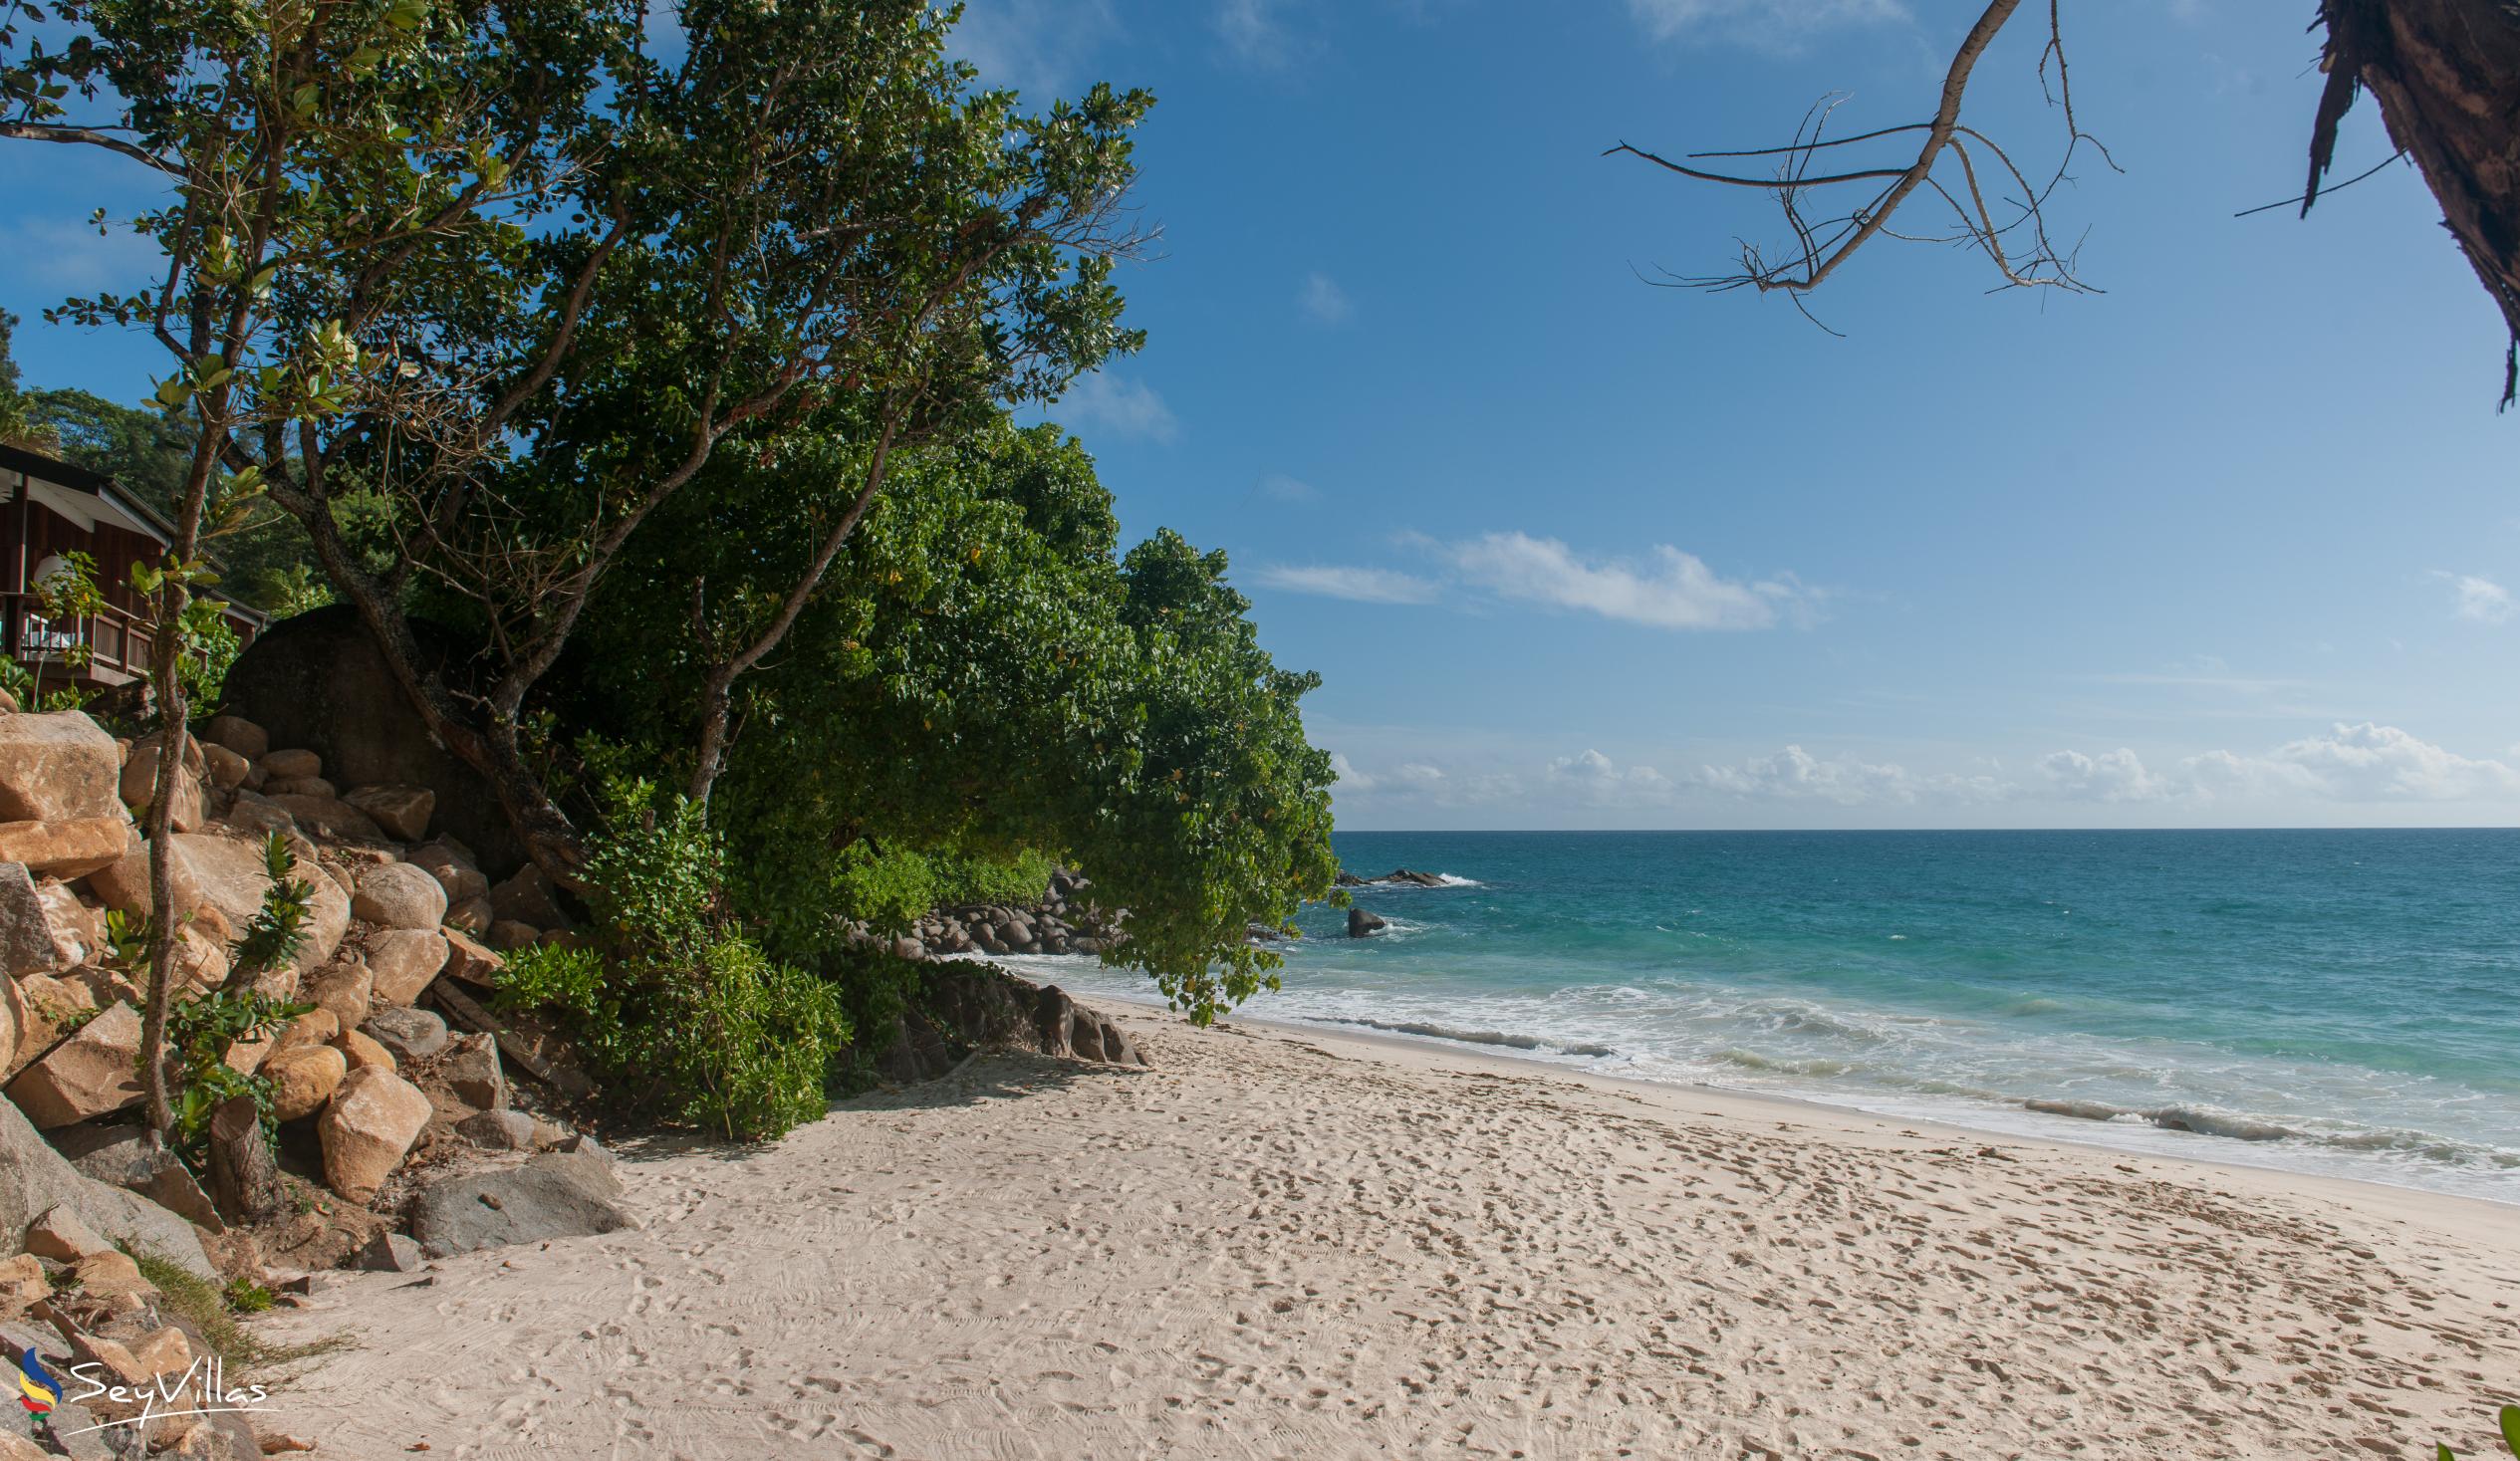 Foto 64: Carana Beach Hotel - Location - Mahé (Seychelles)